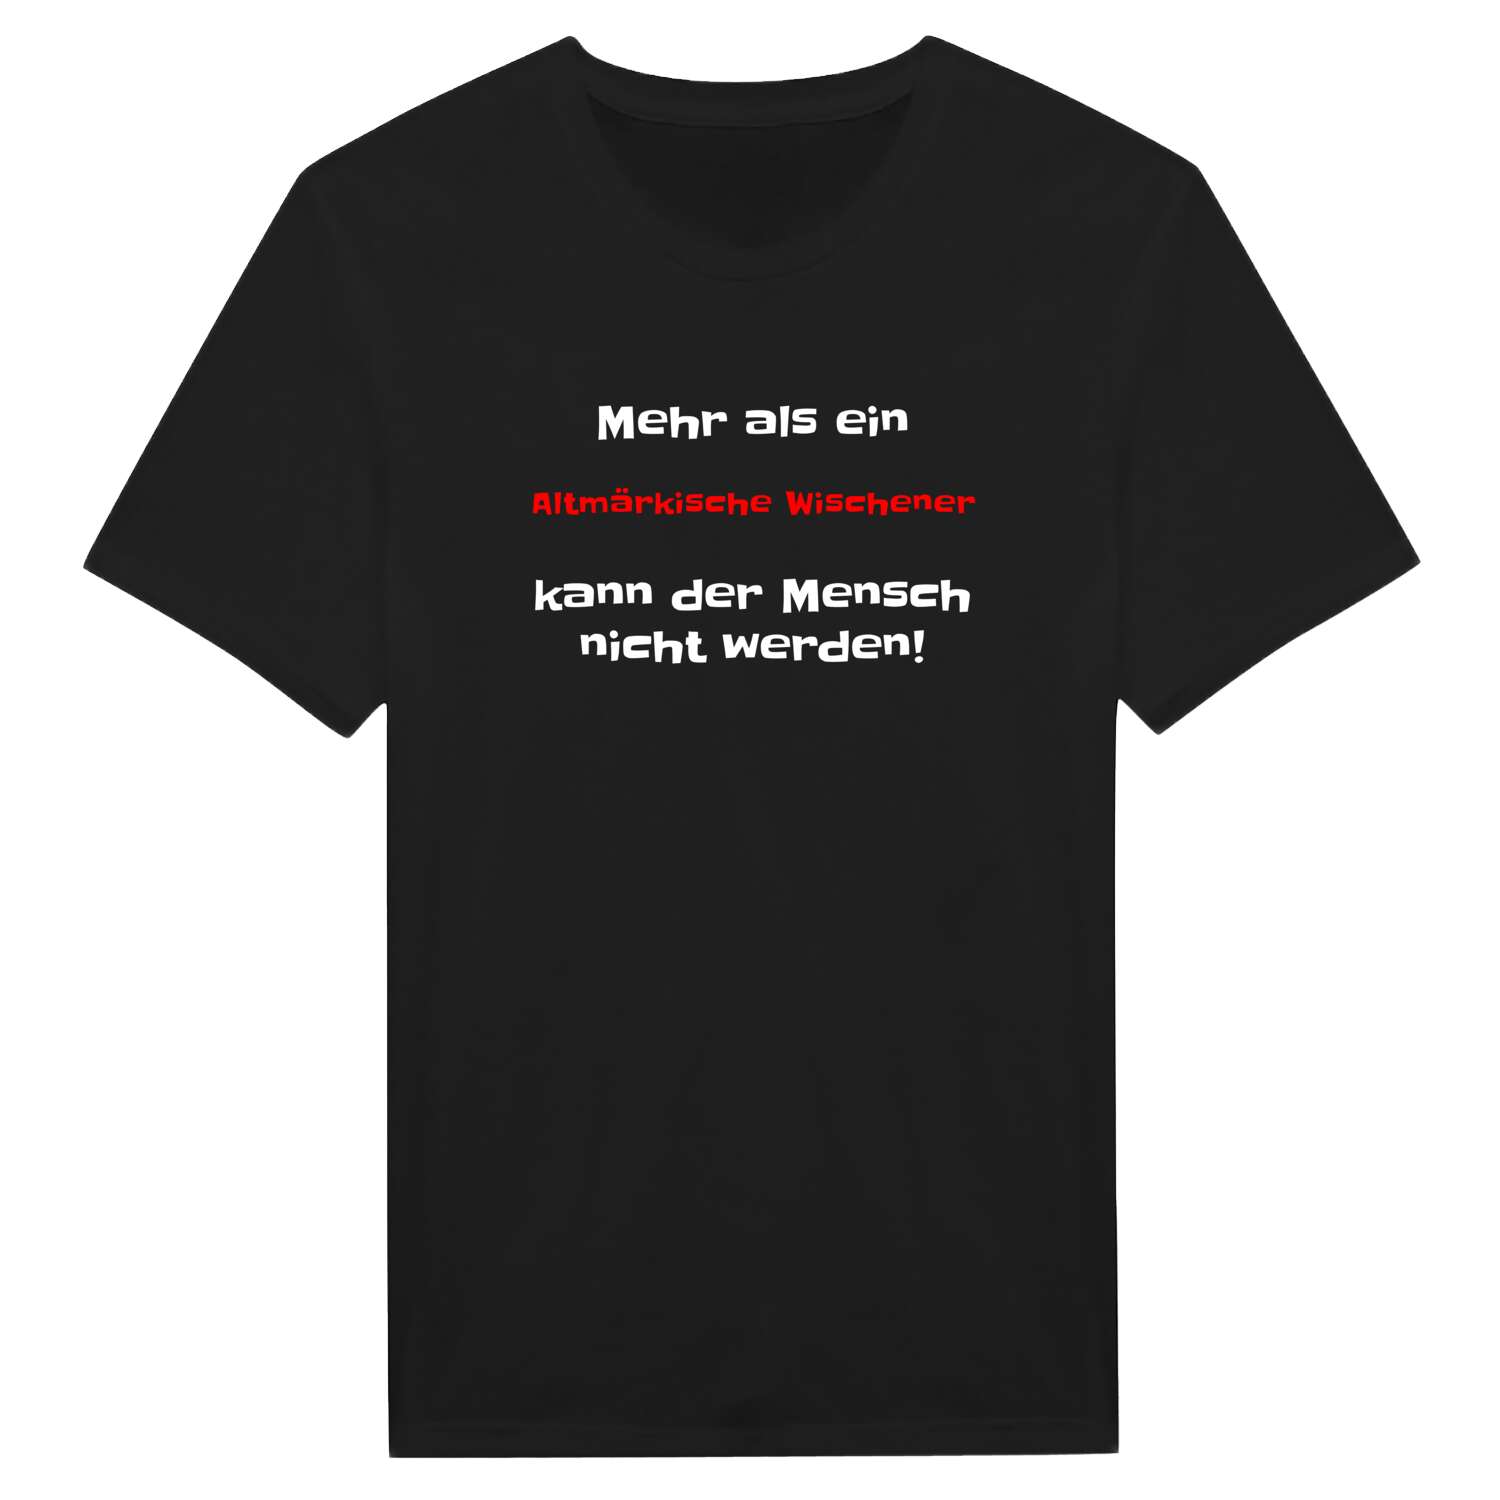 Altmärkische Wische T-Shirt »Mehr als ein«